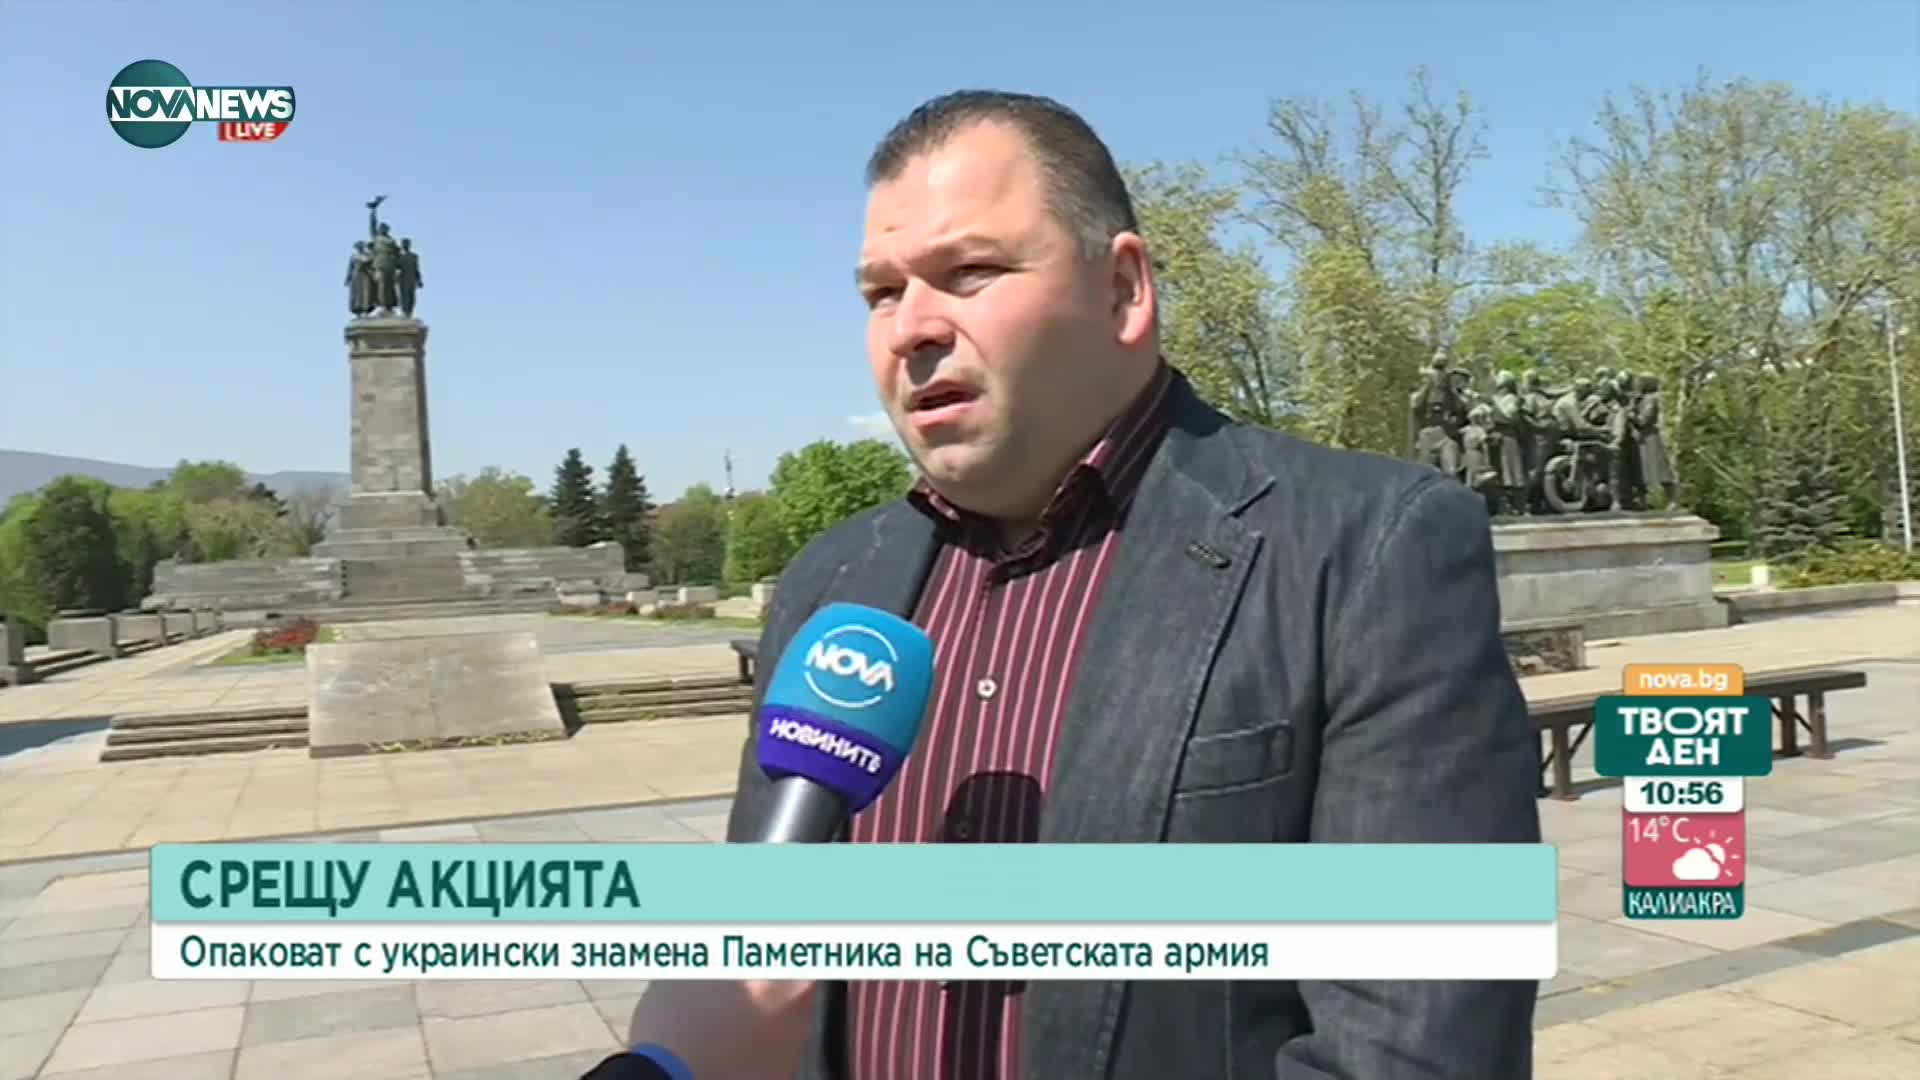 Опаковат Паметника на съветската армия със знамената на България и Украйна